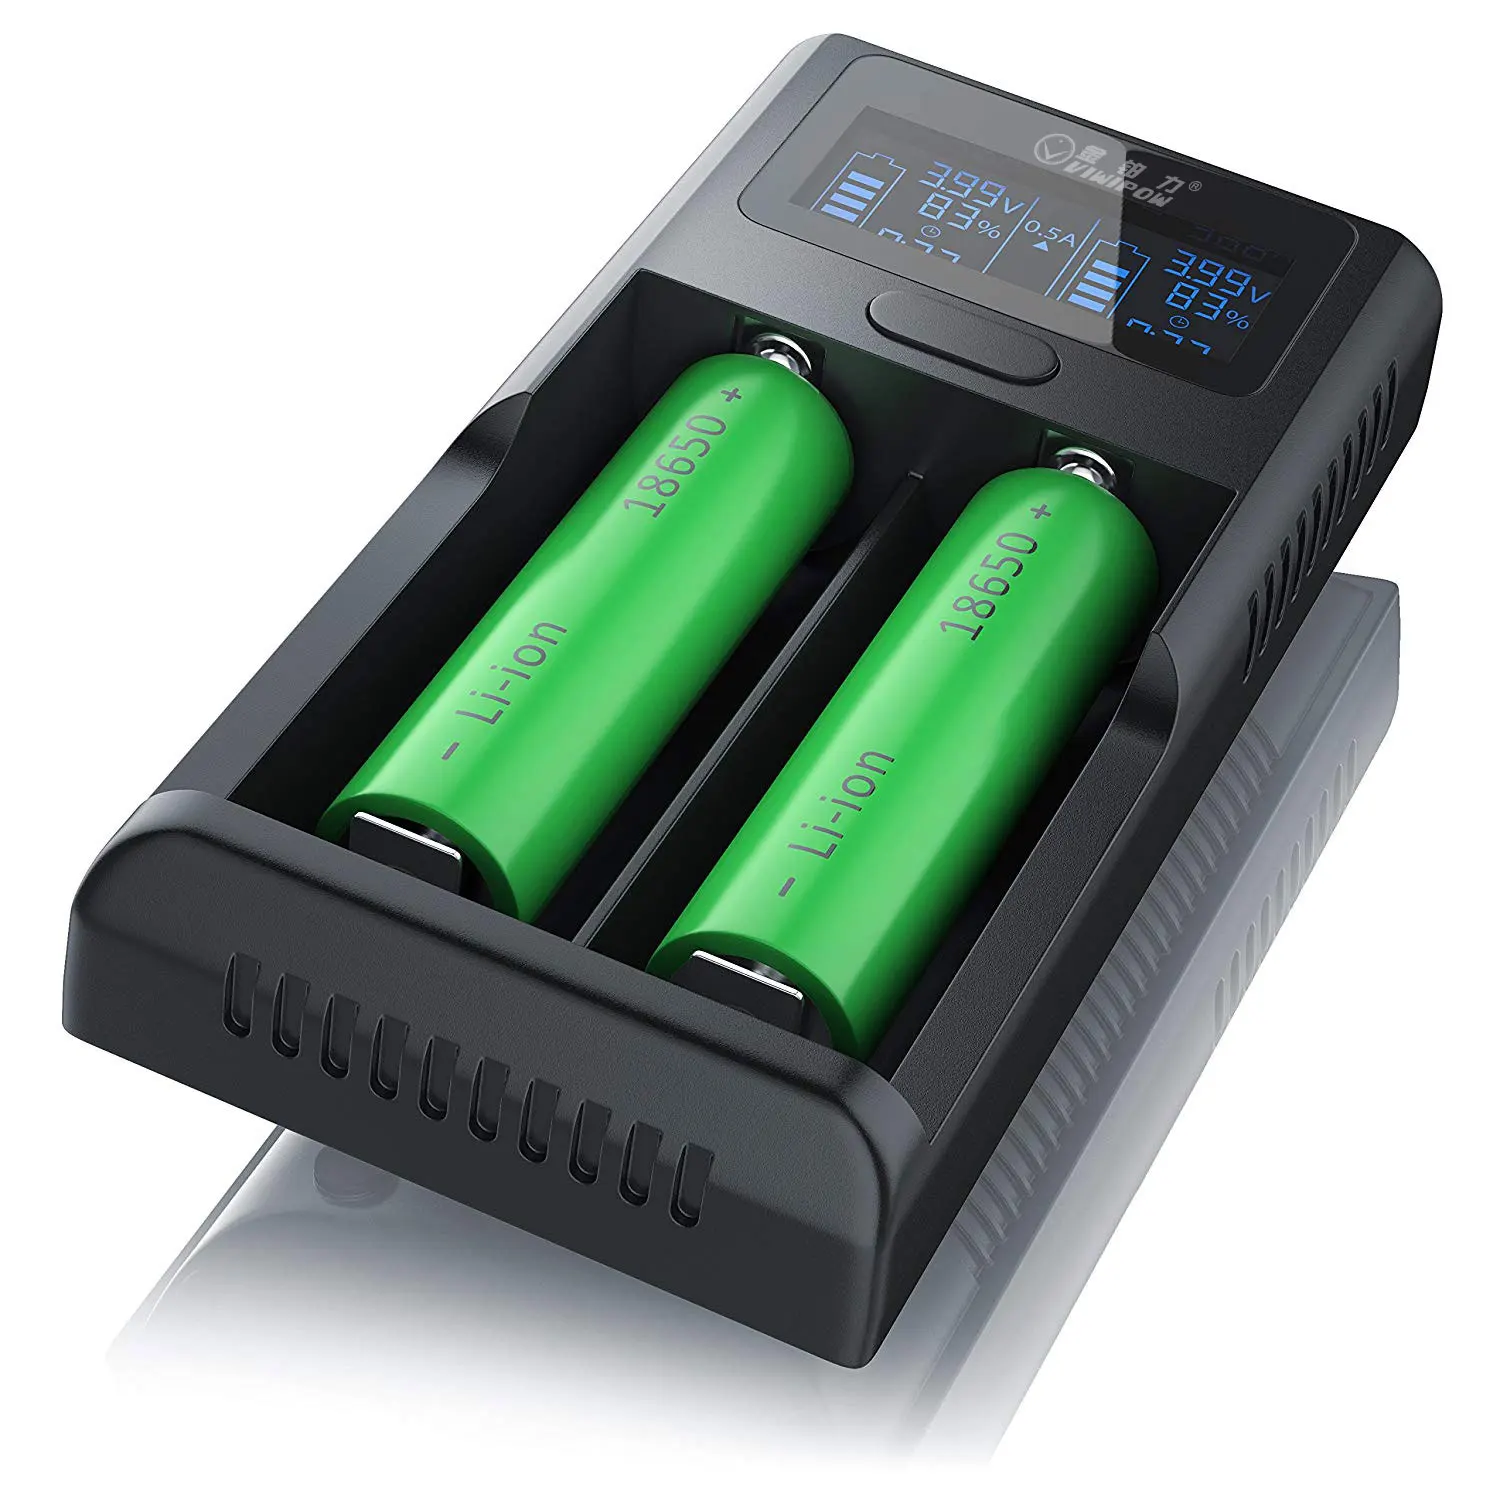 Зарядная литиевая батарея. Зарядка li-ion аккумуляторов 18650. Зарядка для АКБ 18650. Зарядка для аккумуляторных батареек 18650. Юсб зарядка 18650.